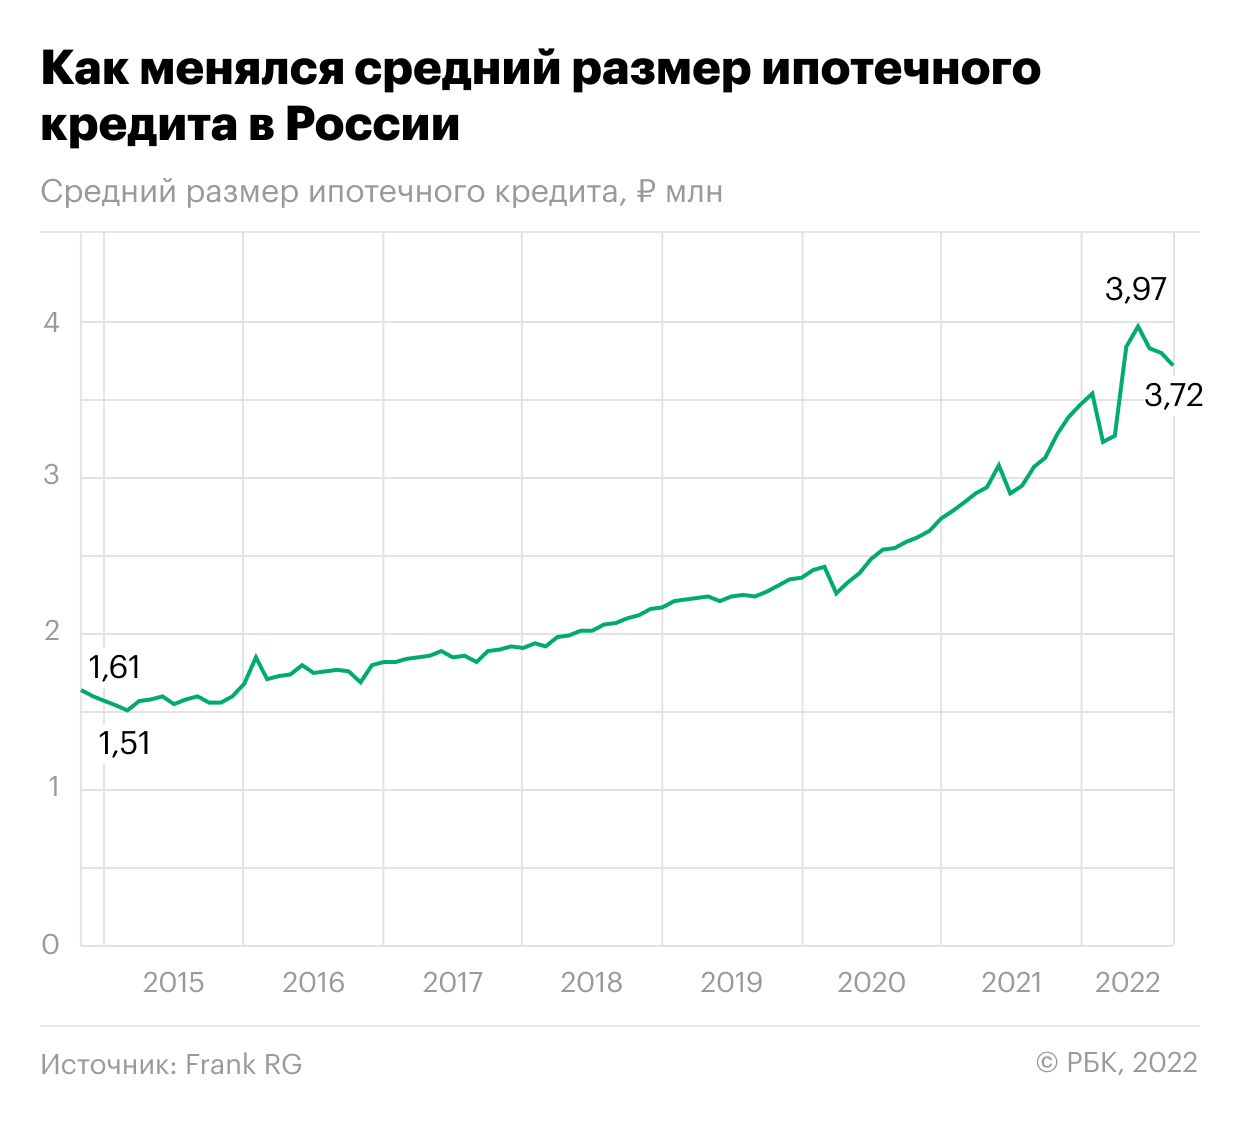 Как за семь лет ипотечный кредит в России вырос в два раза. Инфографика